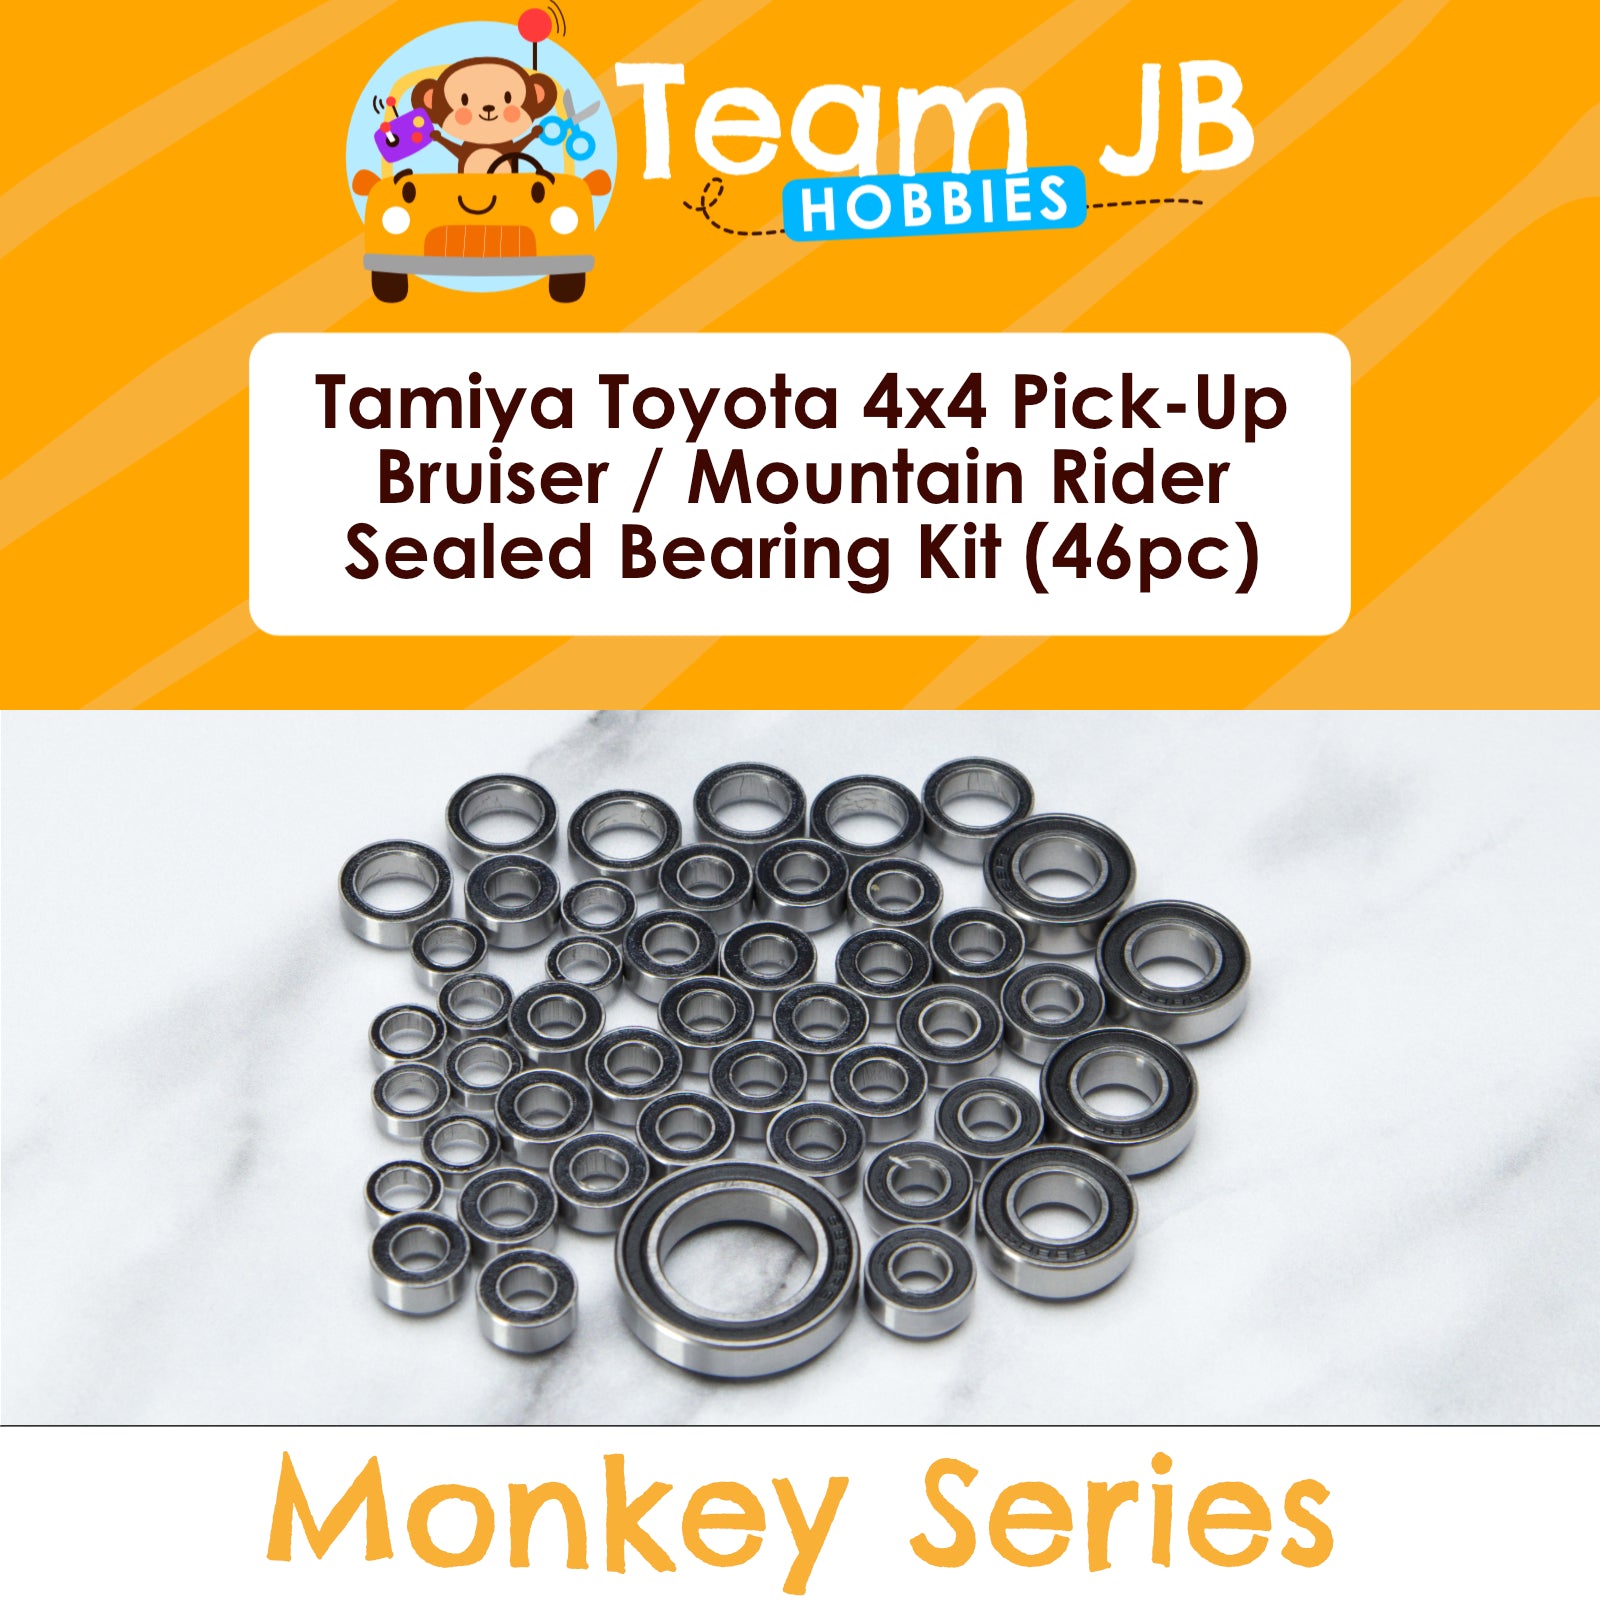 Tamiya Toyota 4x4 Pick-Up Bruiser / Mountain Rider - Sealed Bearing Kit